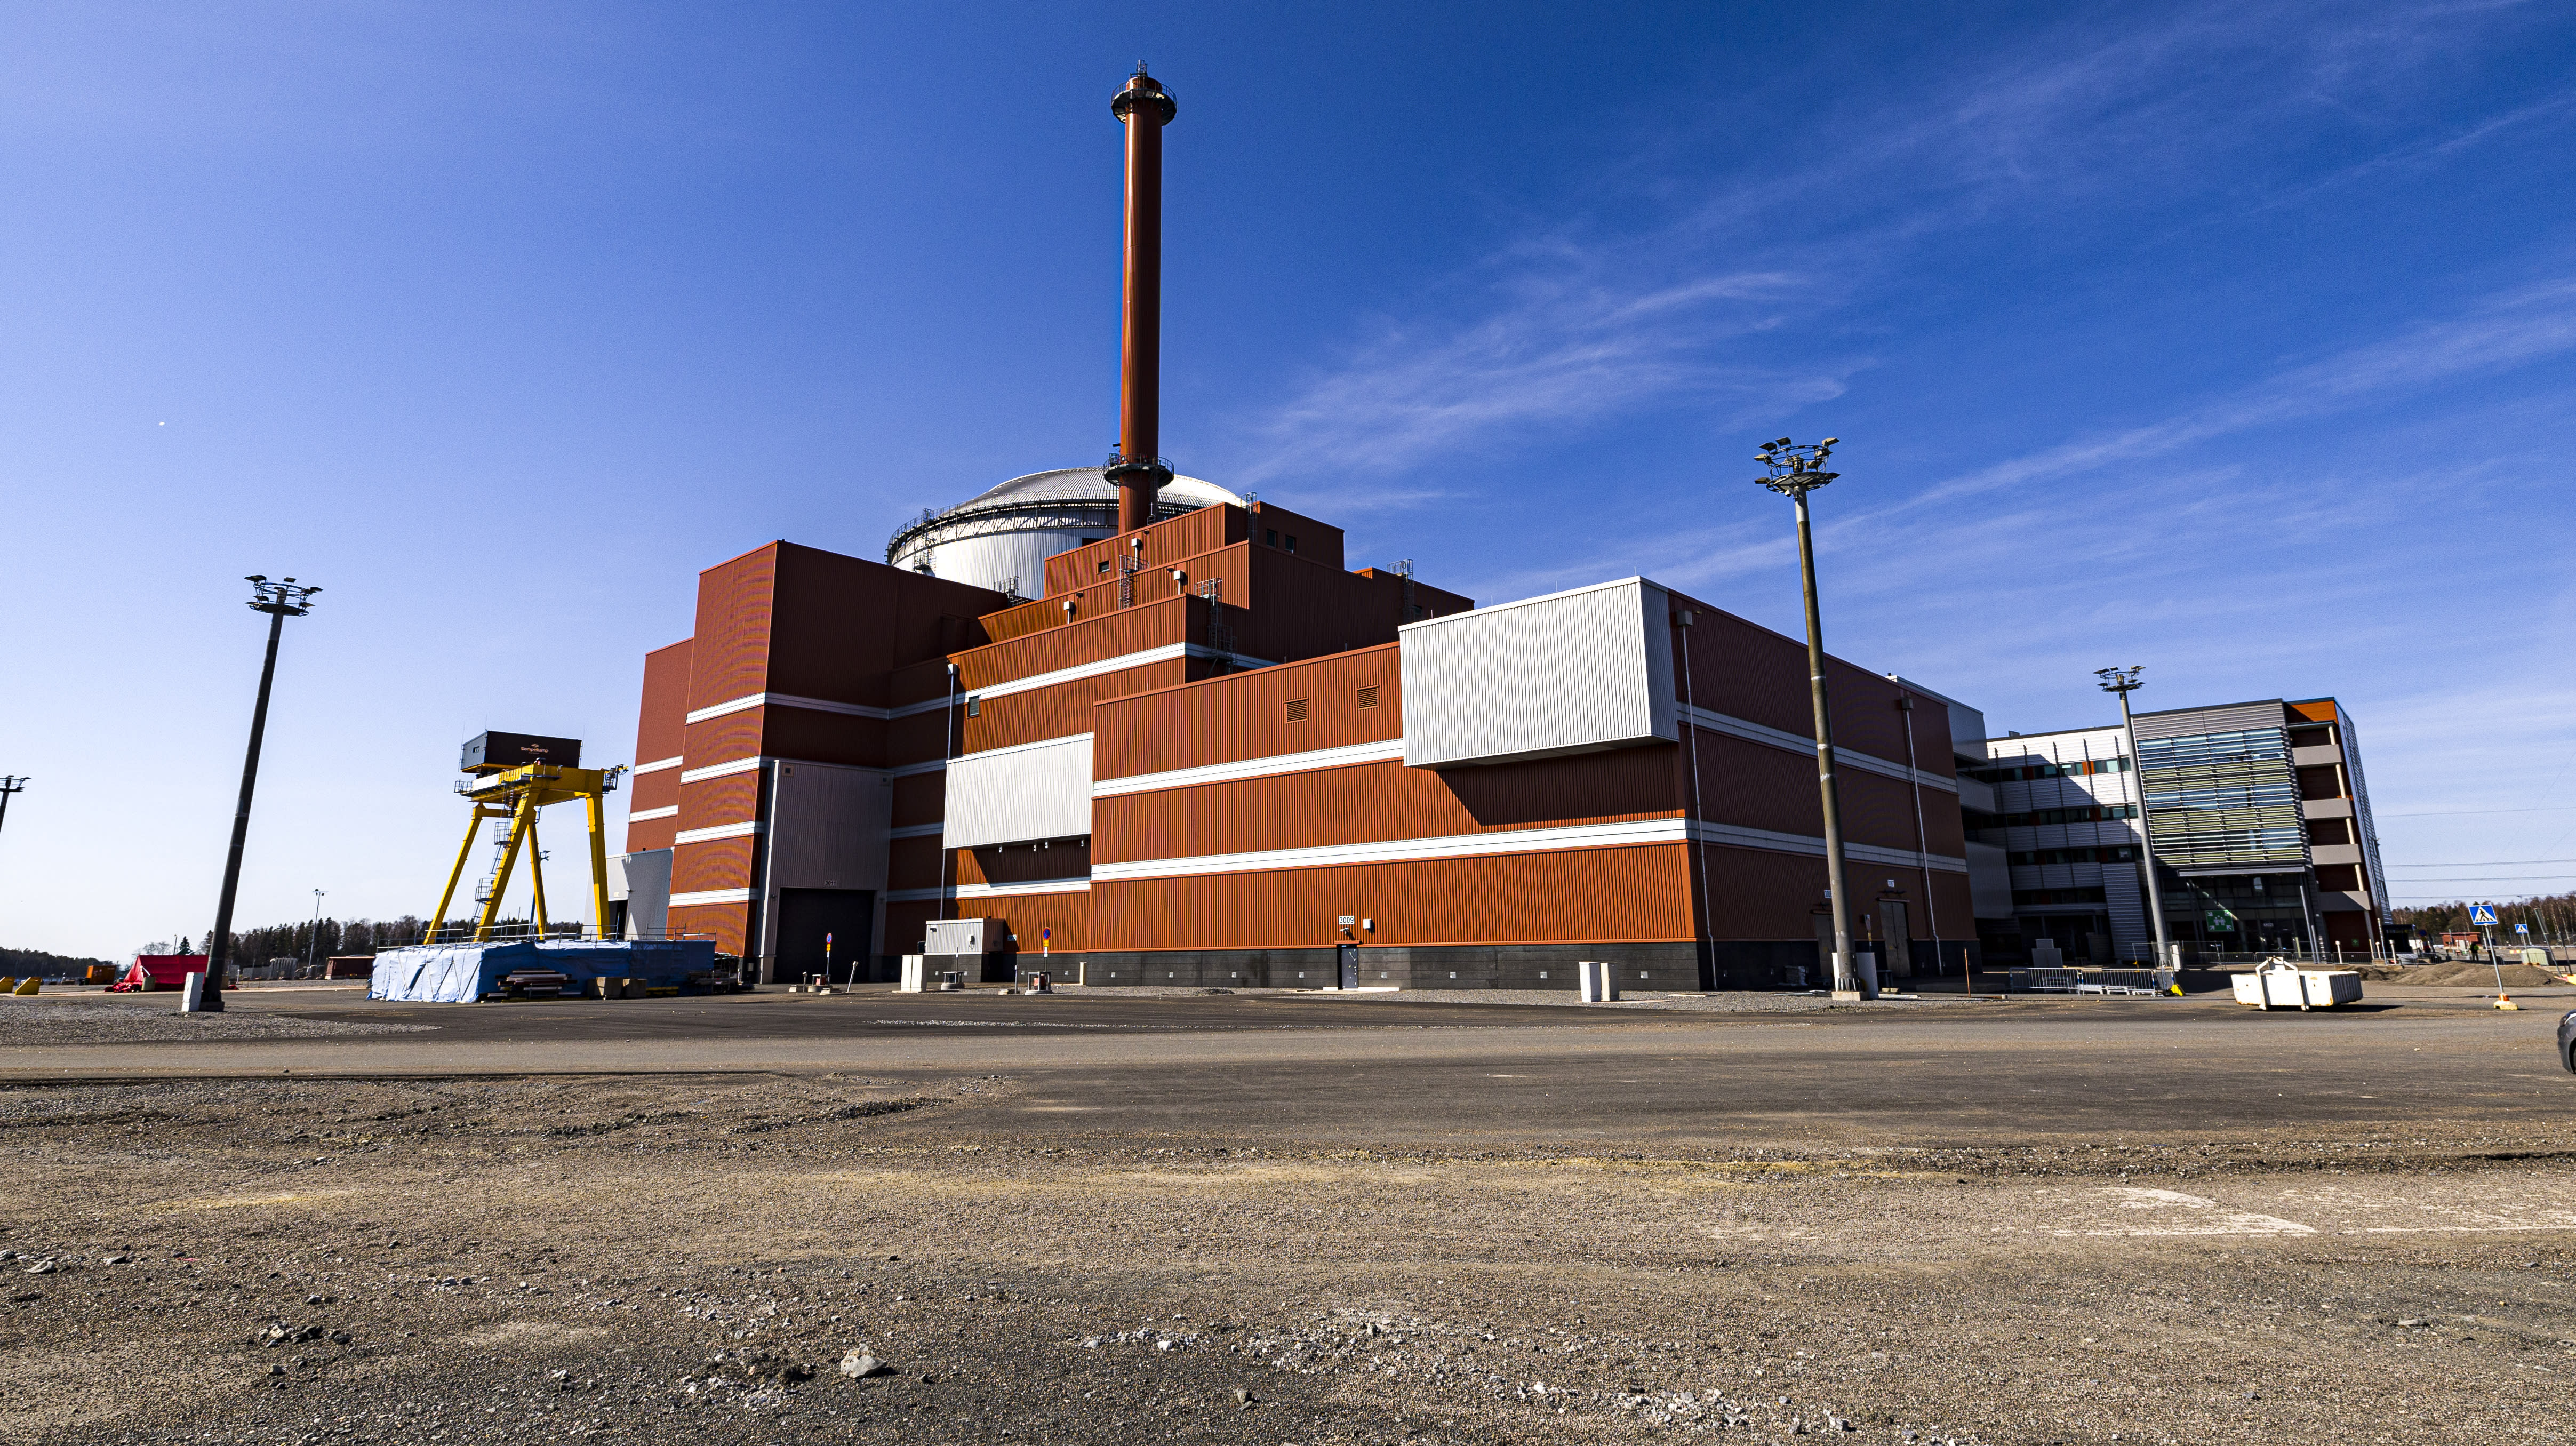 Reaktor nuklear OL3 Finland di luar talian sehingga Selasa